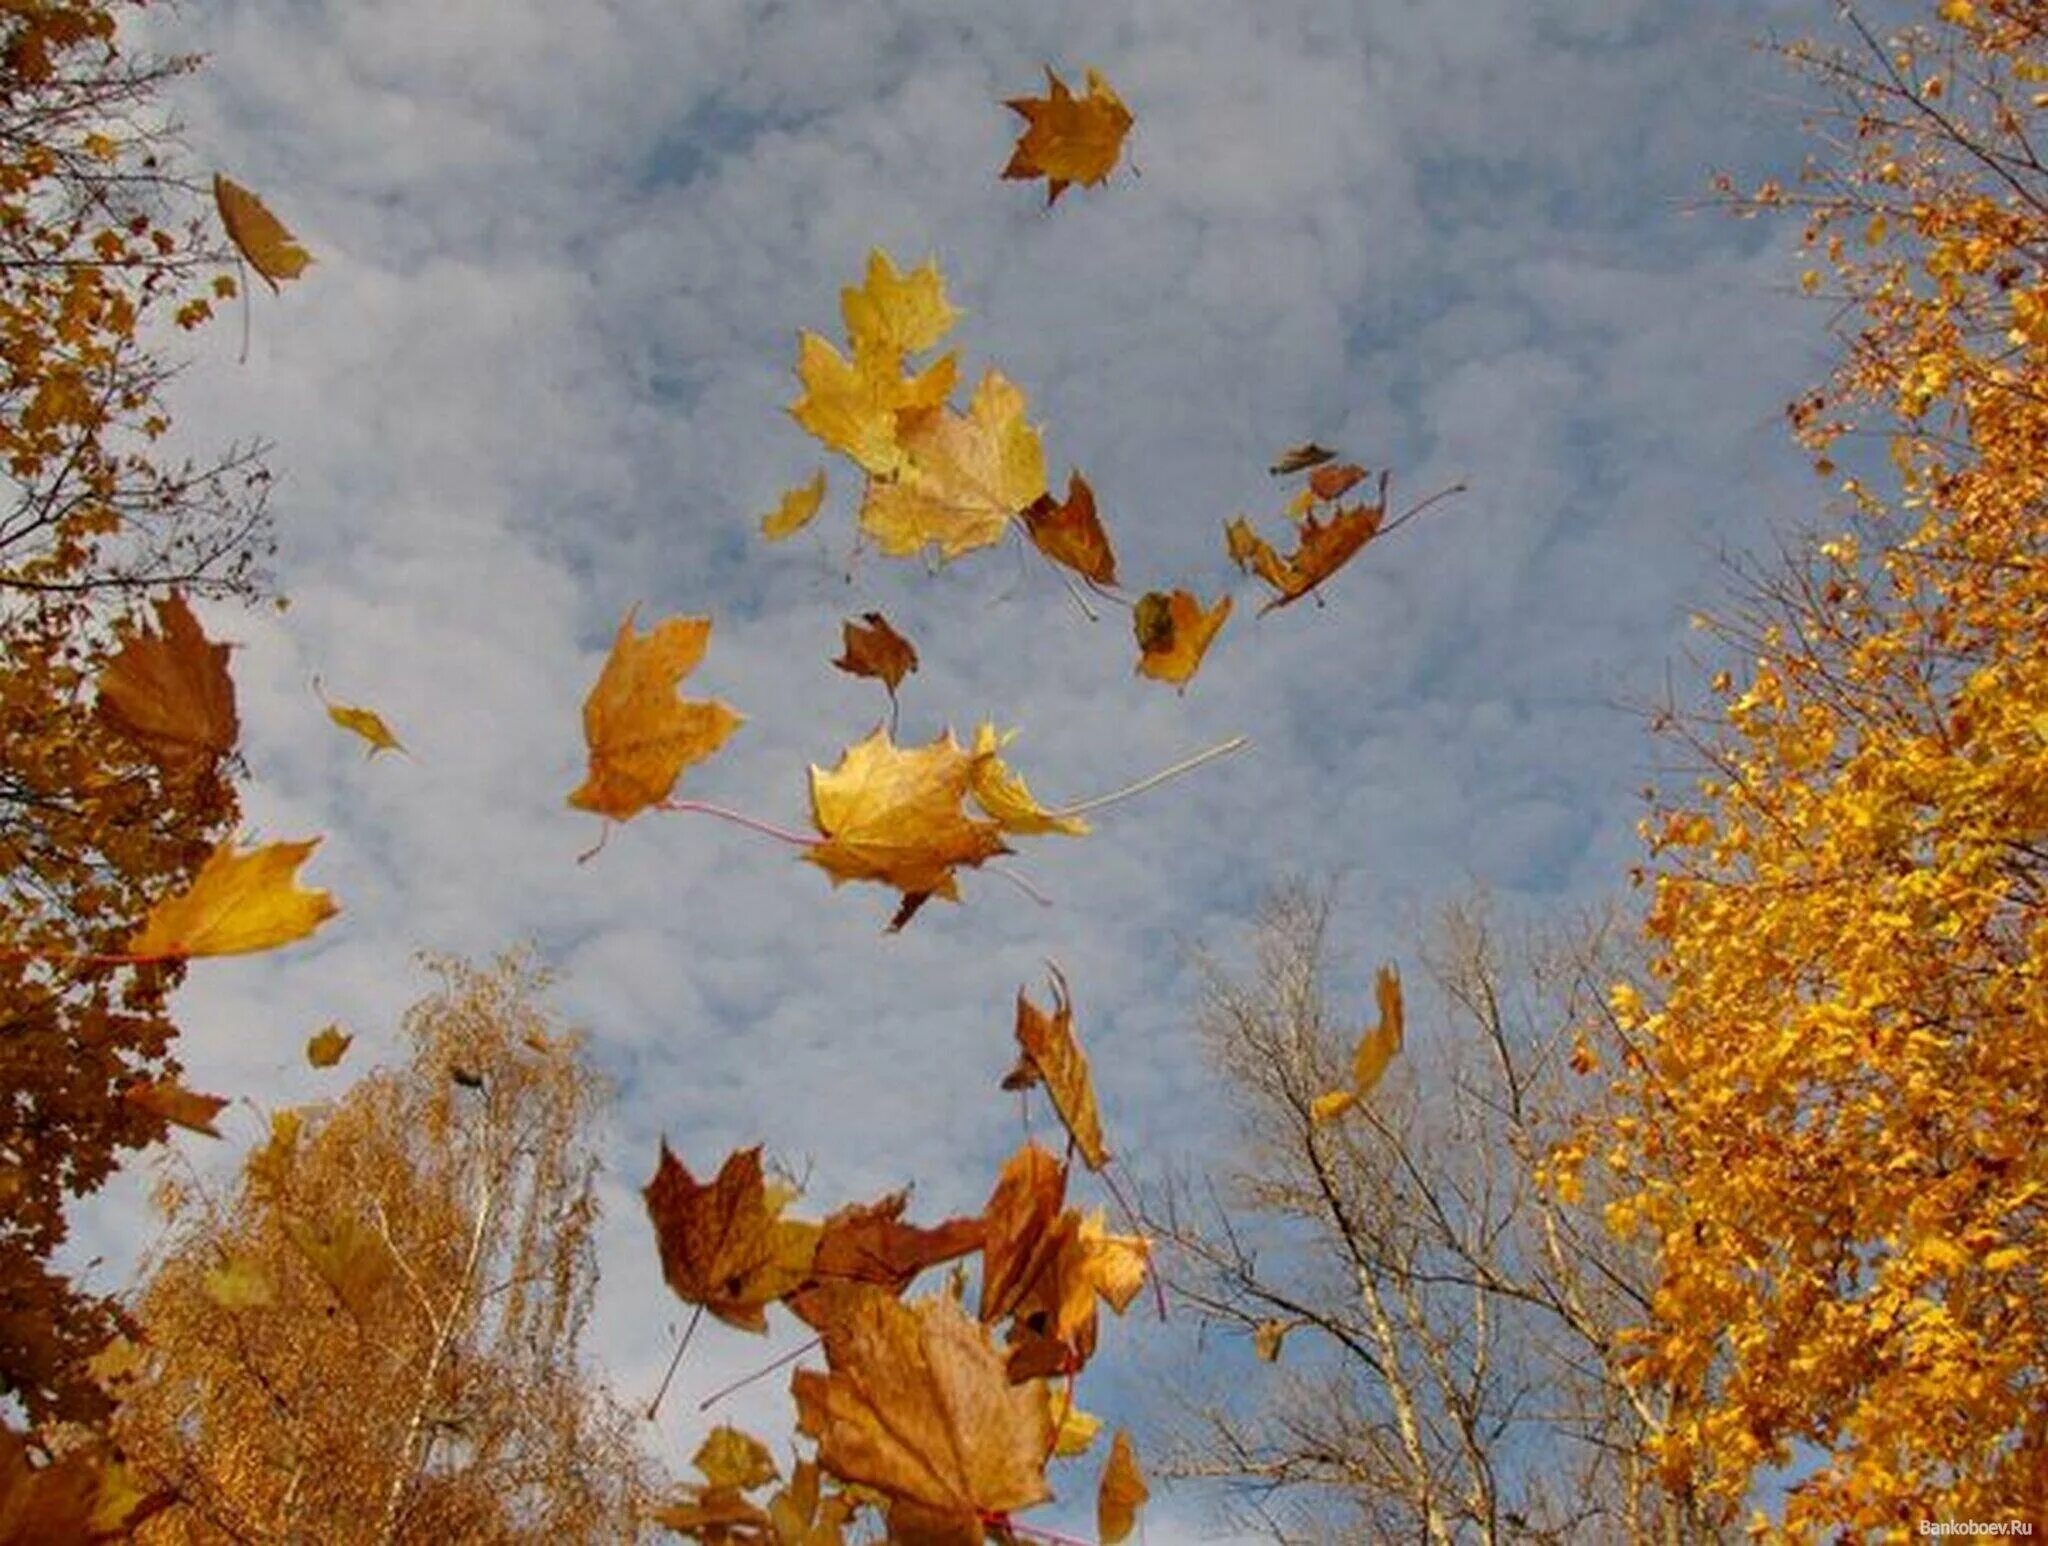 Ветер играет легкой листвою. Осенний листопад. Падающие листья. Осень листопад. Лист на ветру.